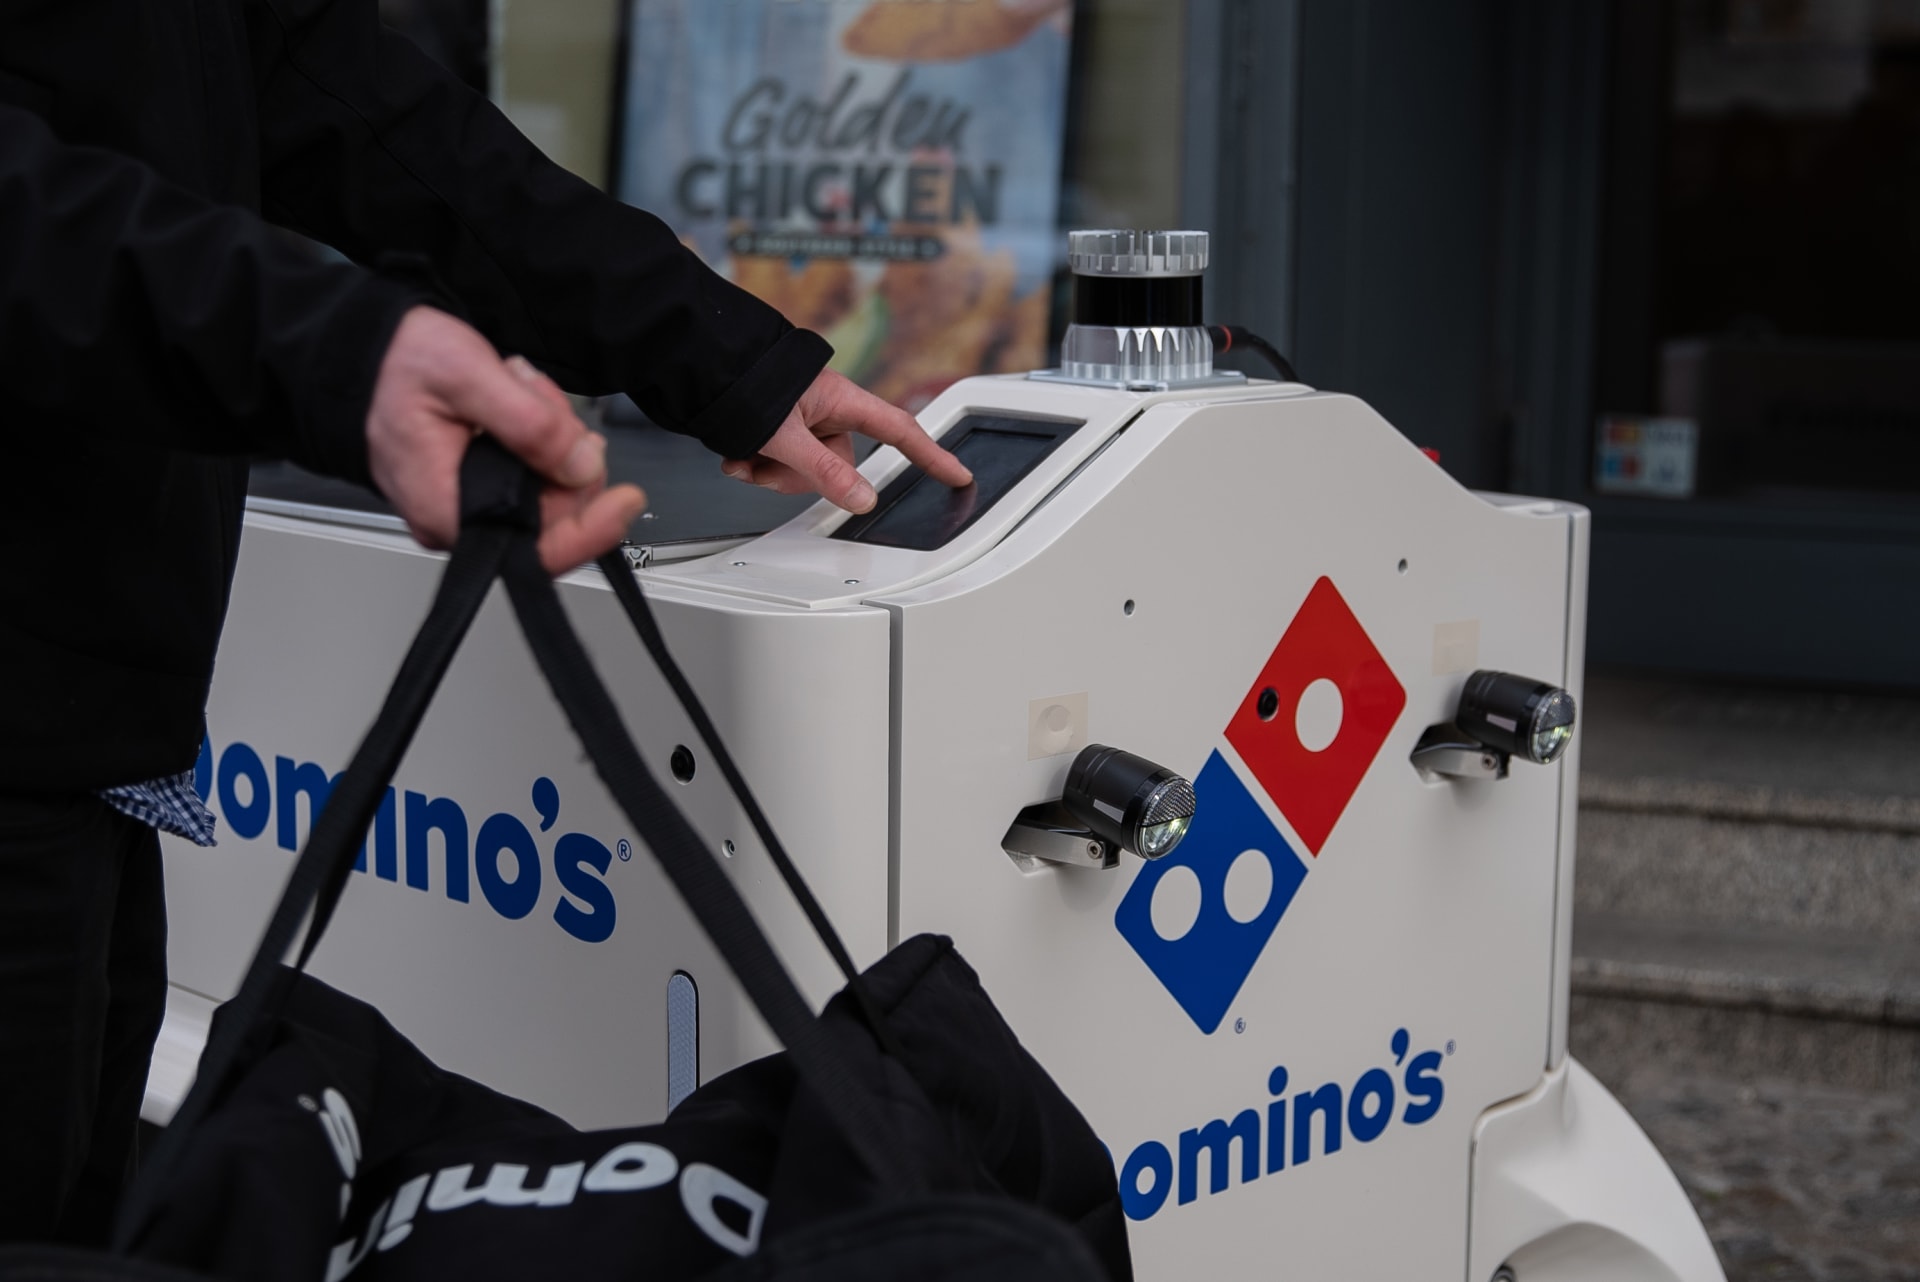 Aby si zákazník vyzvedl z robota svou pizzu, musí na displeji zadat kód, který dostane prostřednictvím mobilní aplikace.